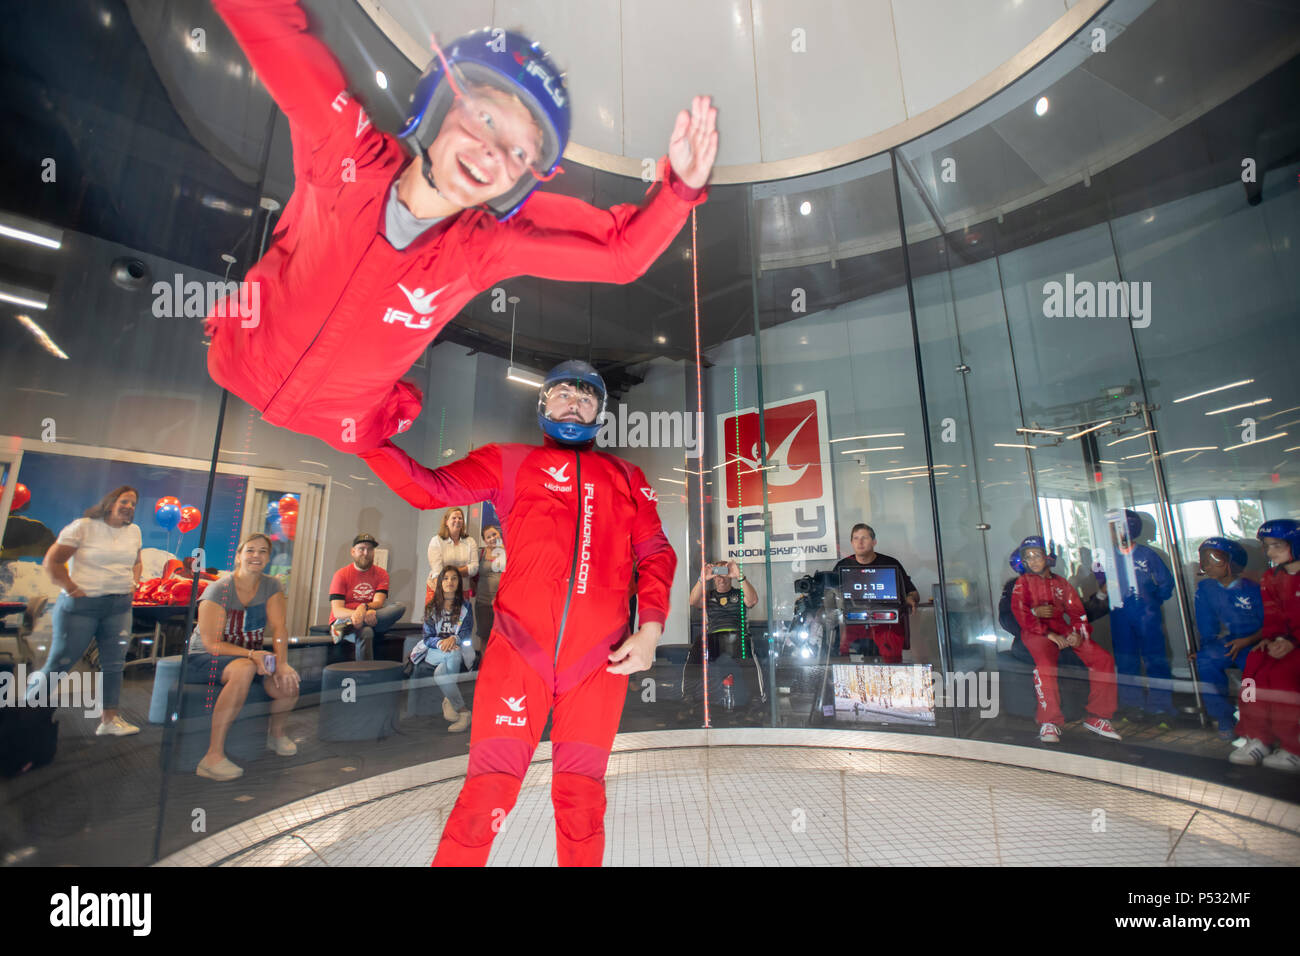 Soufflerie iFly indoor skydiving donnant au participant le sentiment de la chute libre sans poids sur la photo d'un instructeur et de l'enfant Banque D'Images